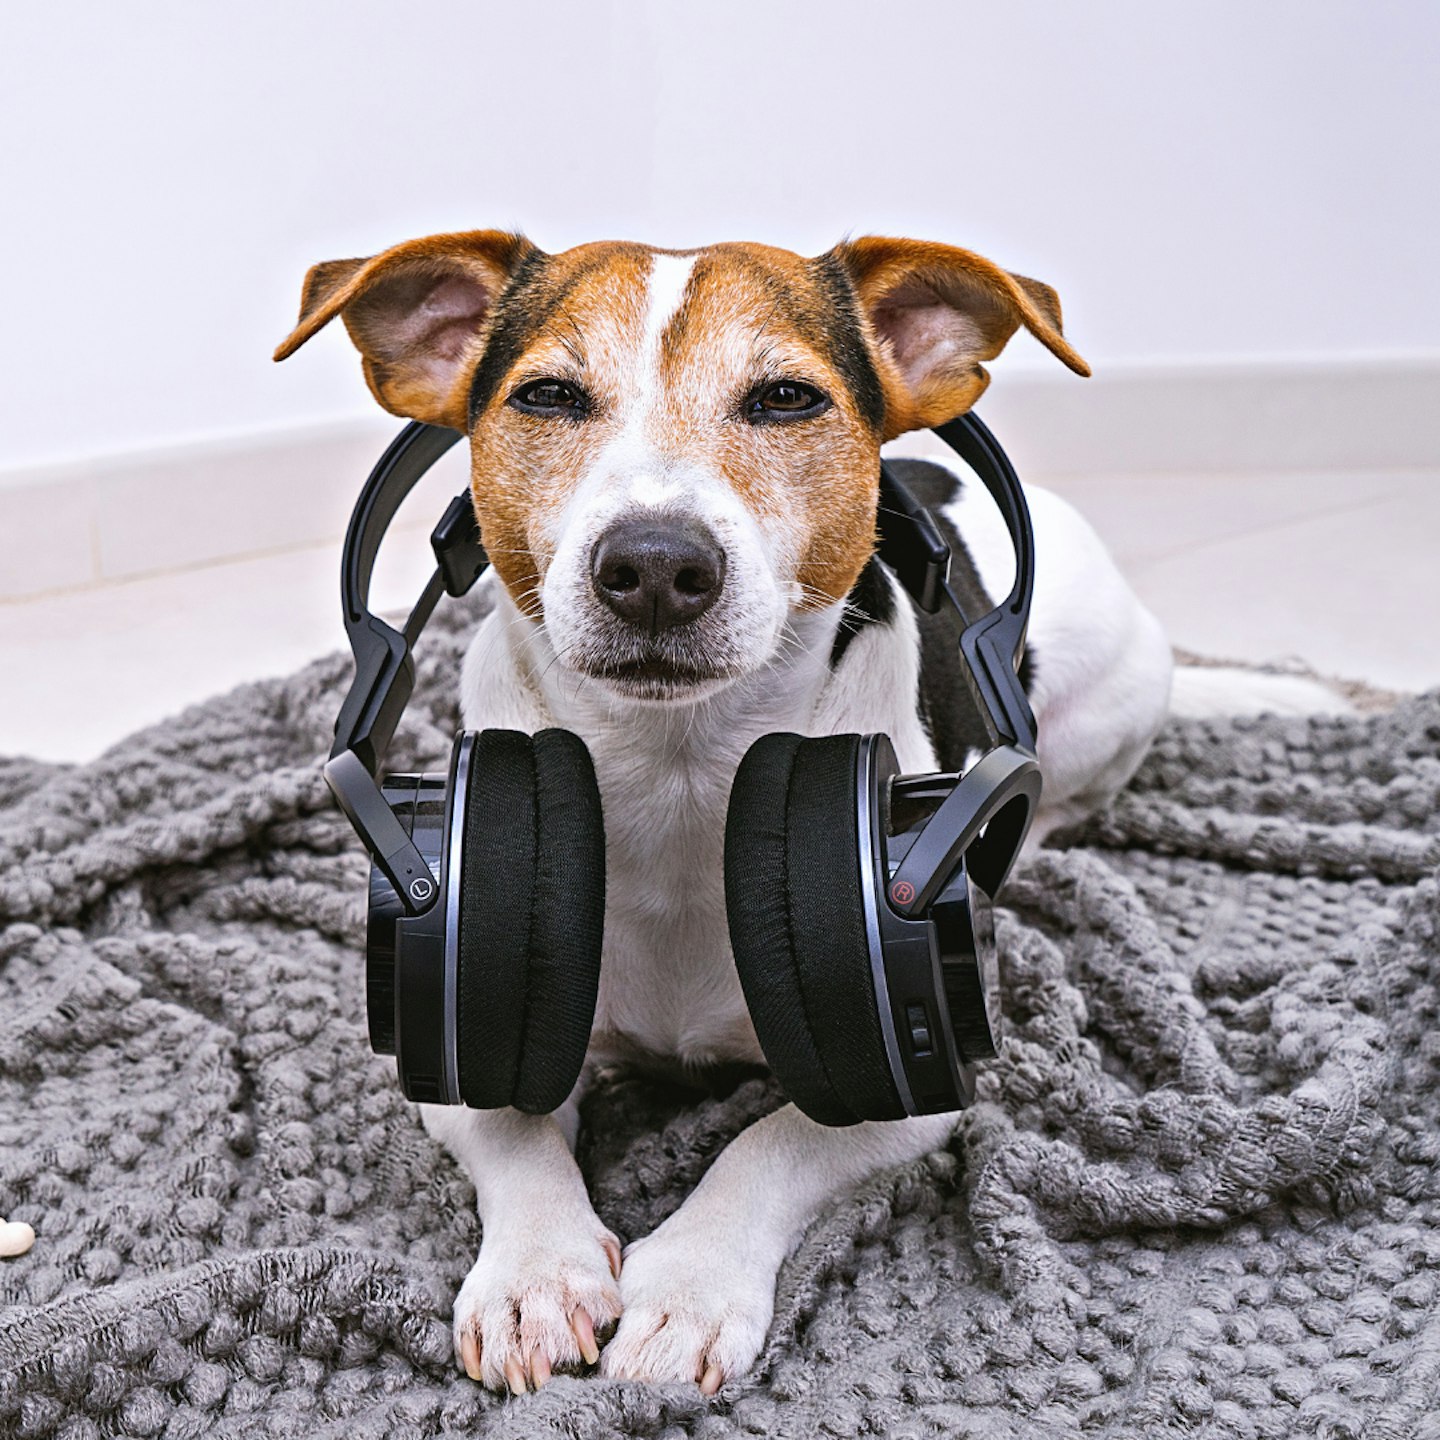 Dog in headphones